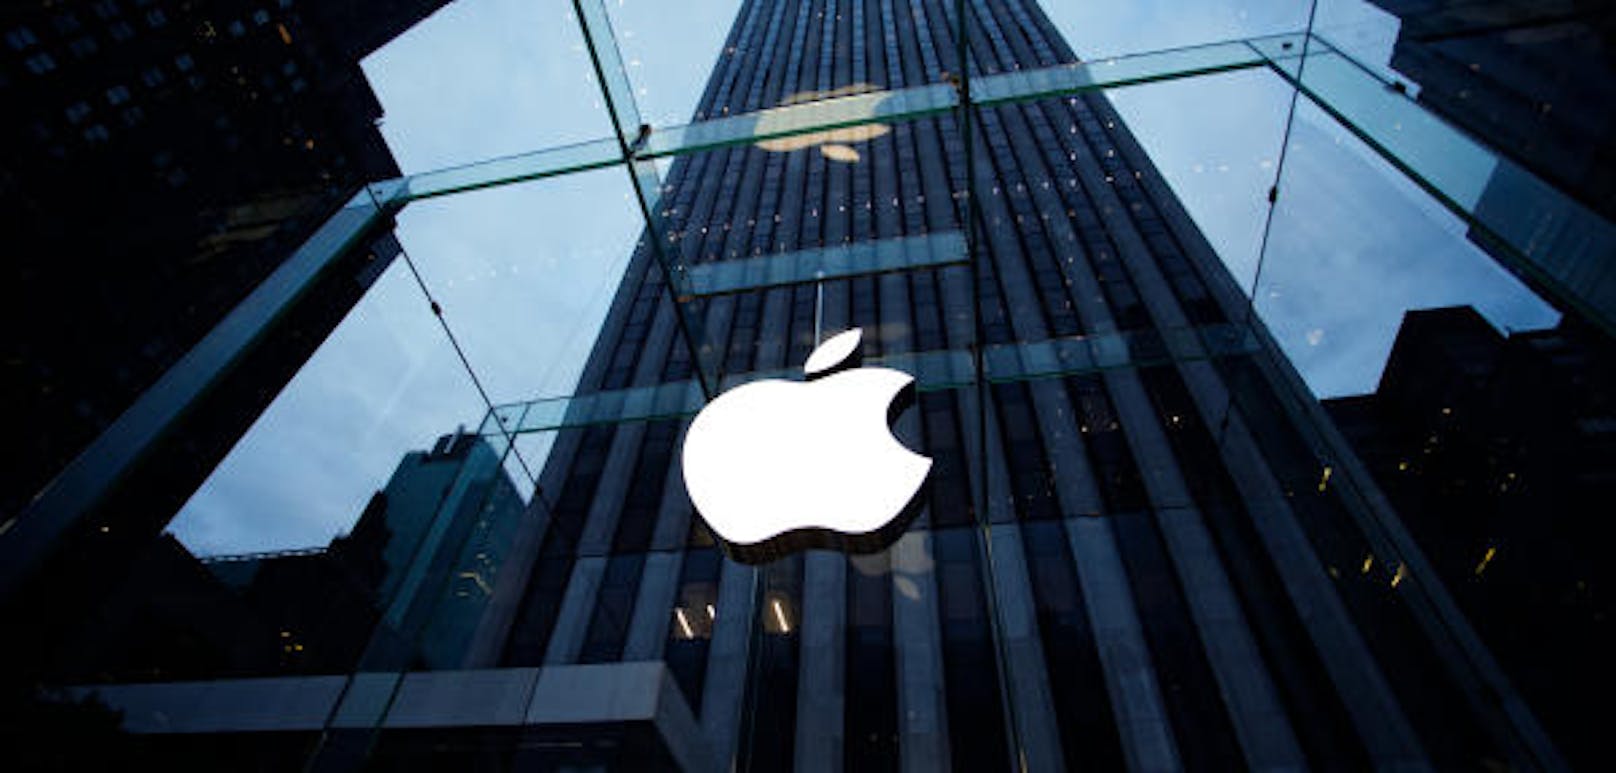 Ein Gericht in den USA sah es als erwiesen an, dass der Apple-Konzern gewisse Patentrechte verletzt habe und daher Schadenersatz leisten müsse.